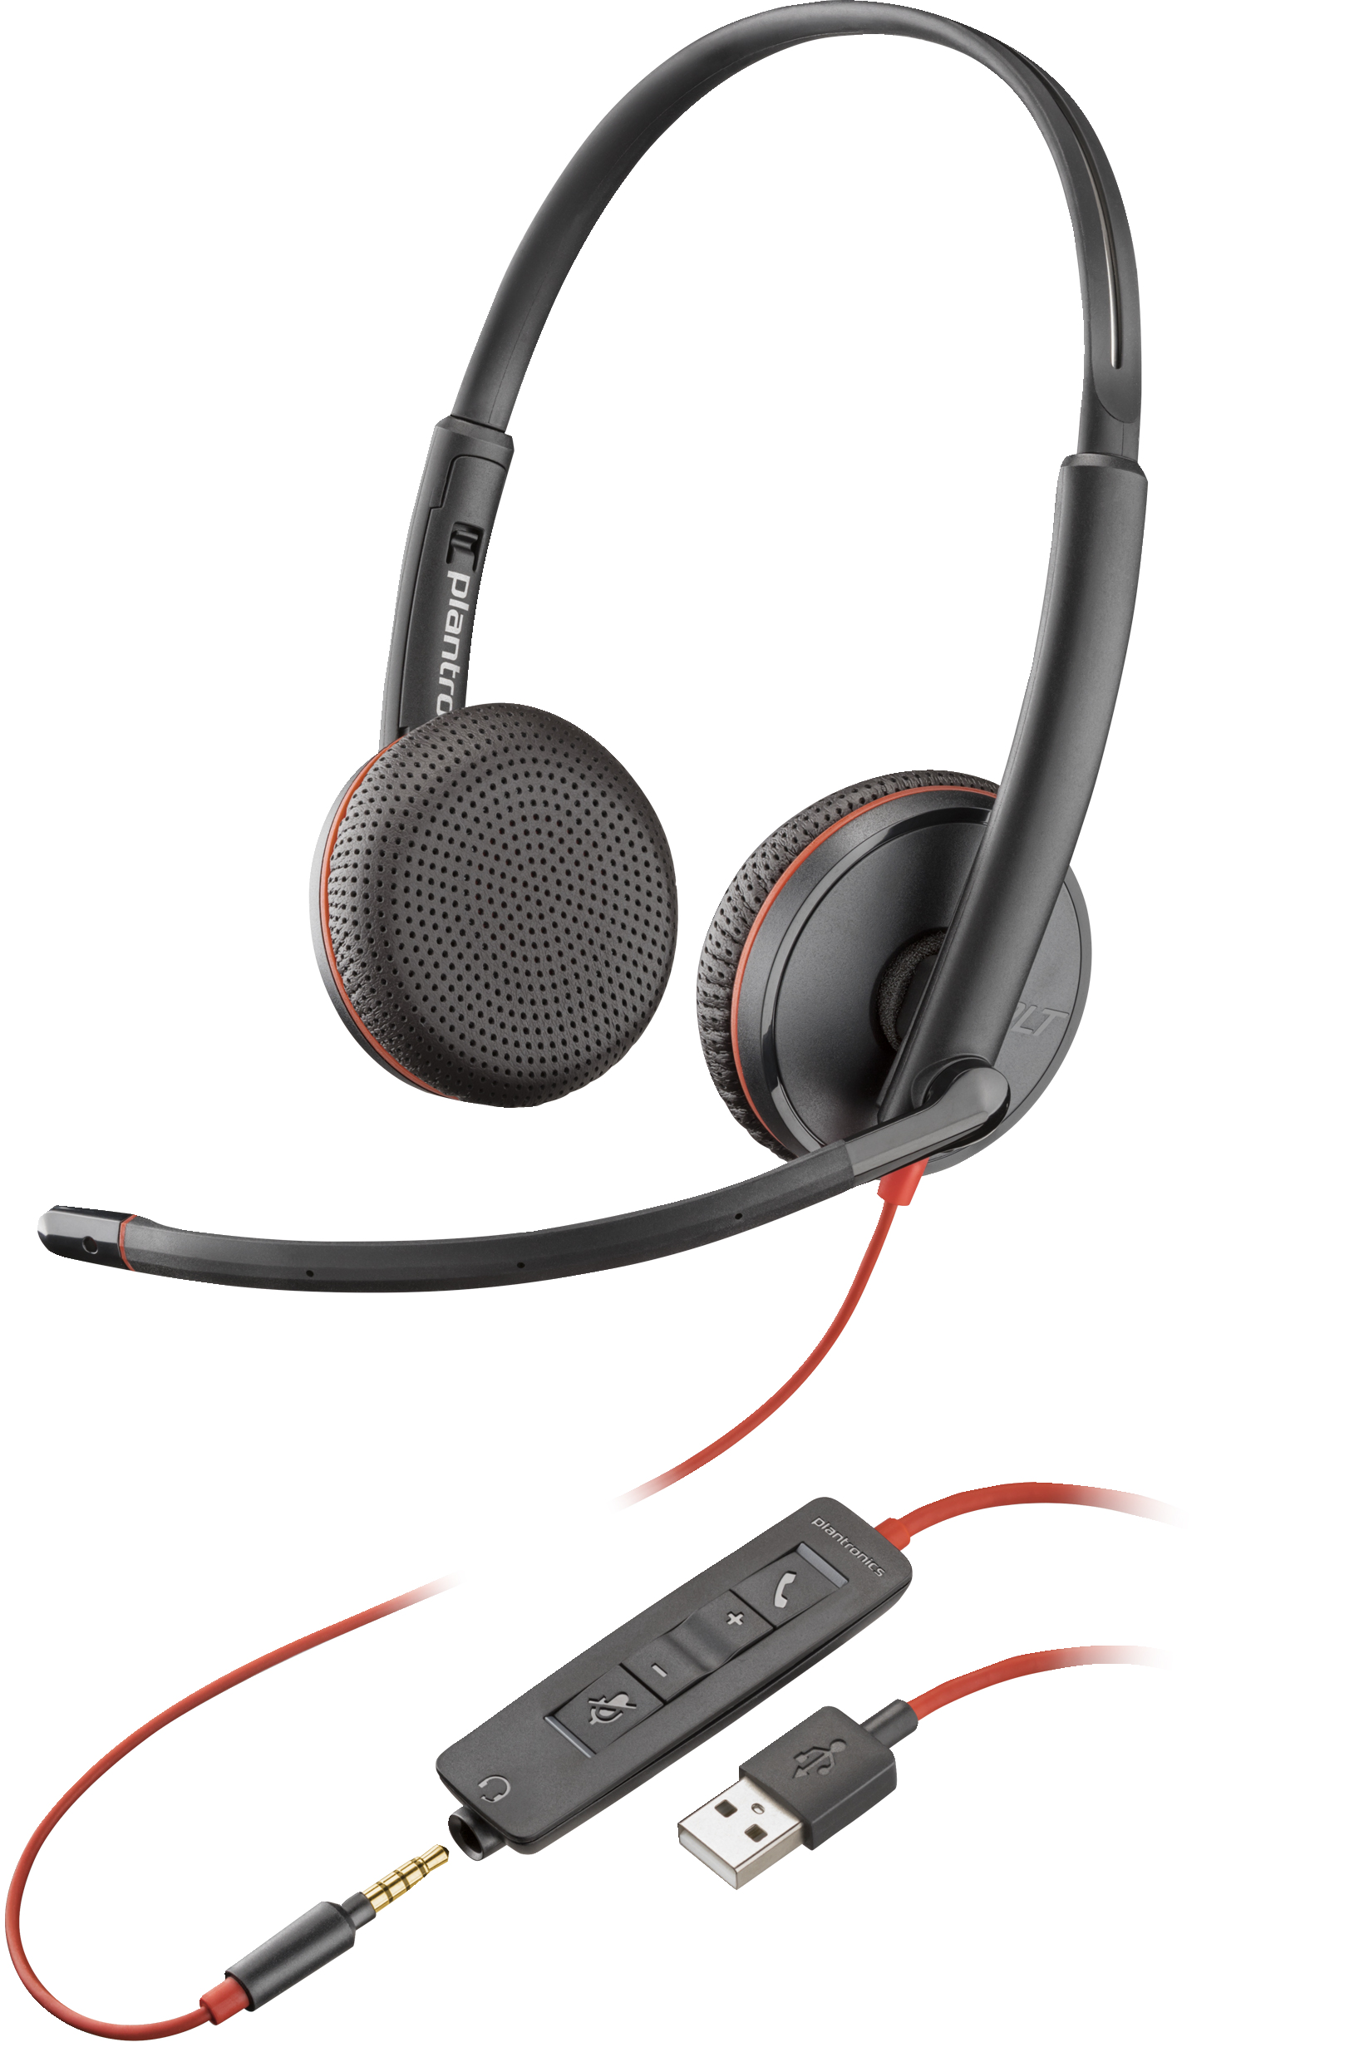 Bild von HP POLY Blackwire 3225 USB-A Stereo-Headset, Kabelgebunden, Büro/Callcenter, 87 g, Kopfhörer, Schwarz